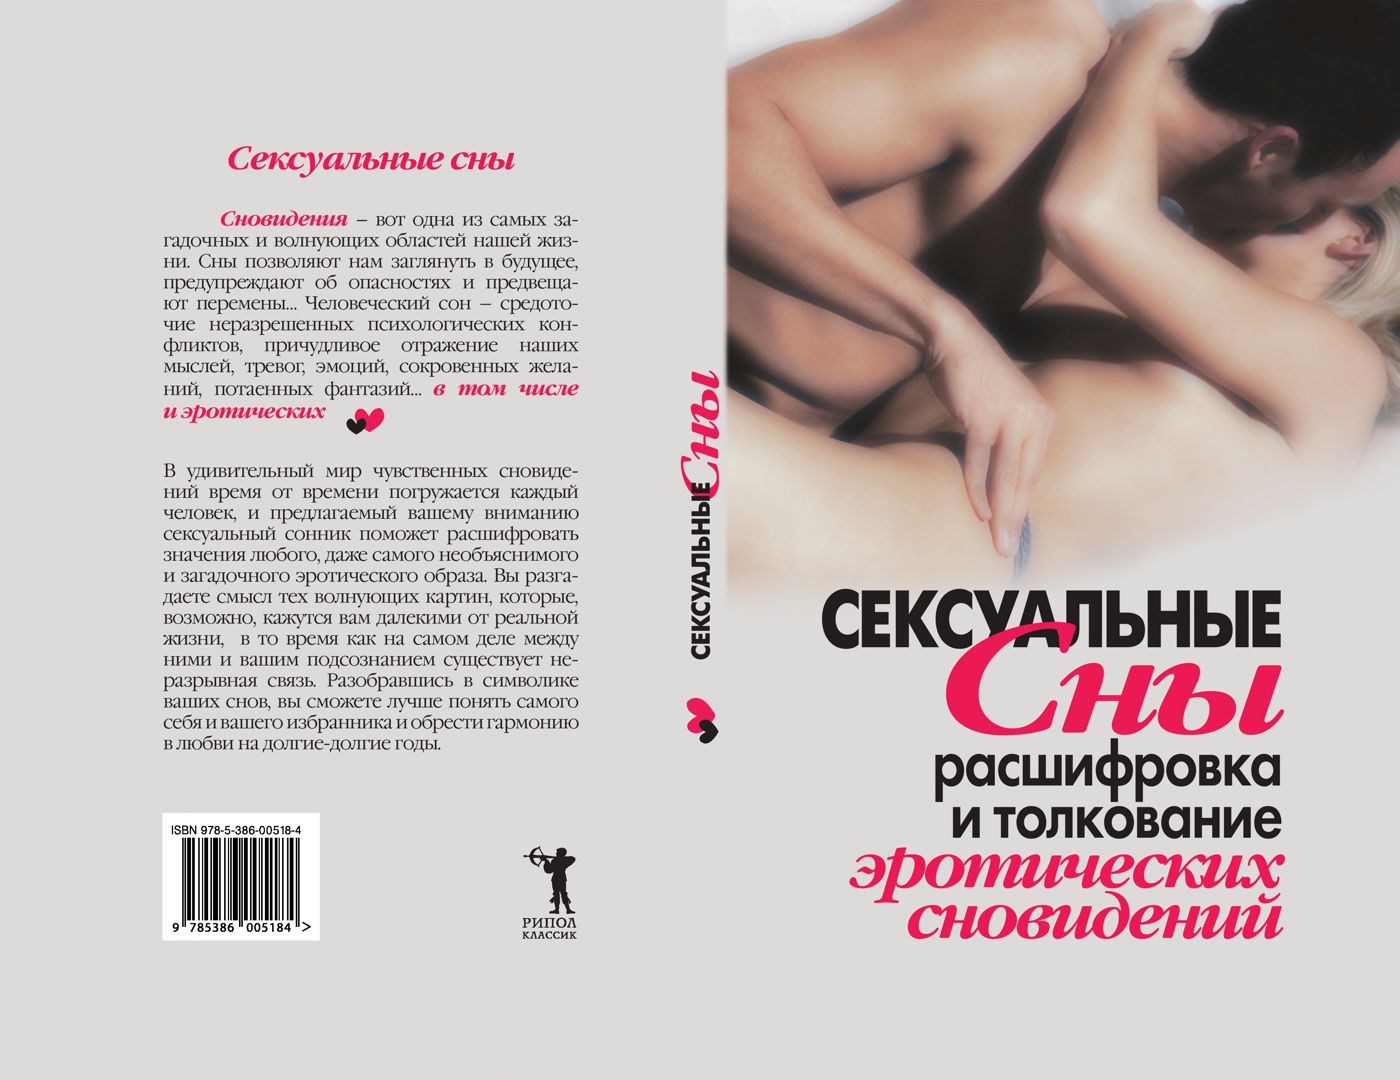 Секс кон: смотреть русское порно видео бесплатно